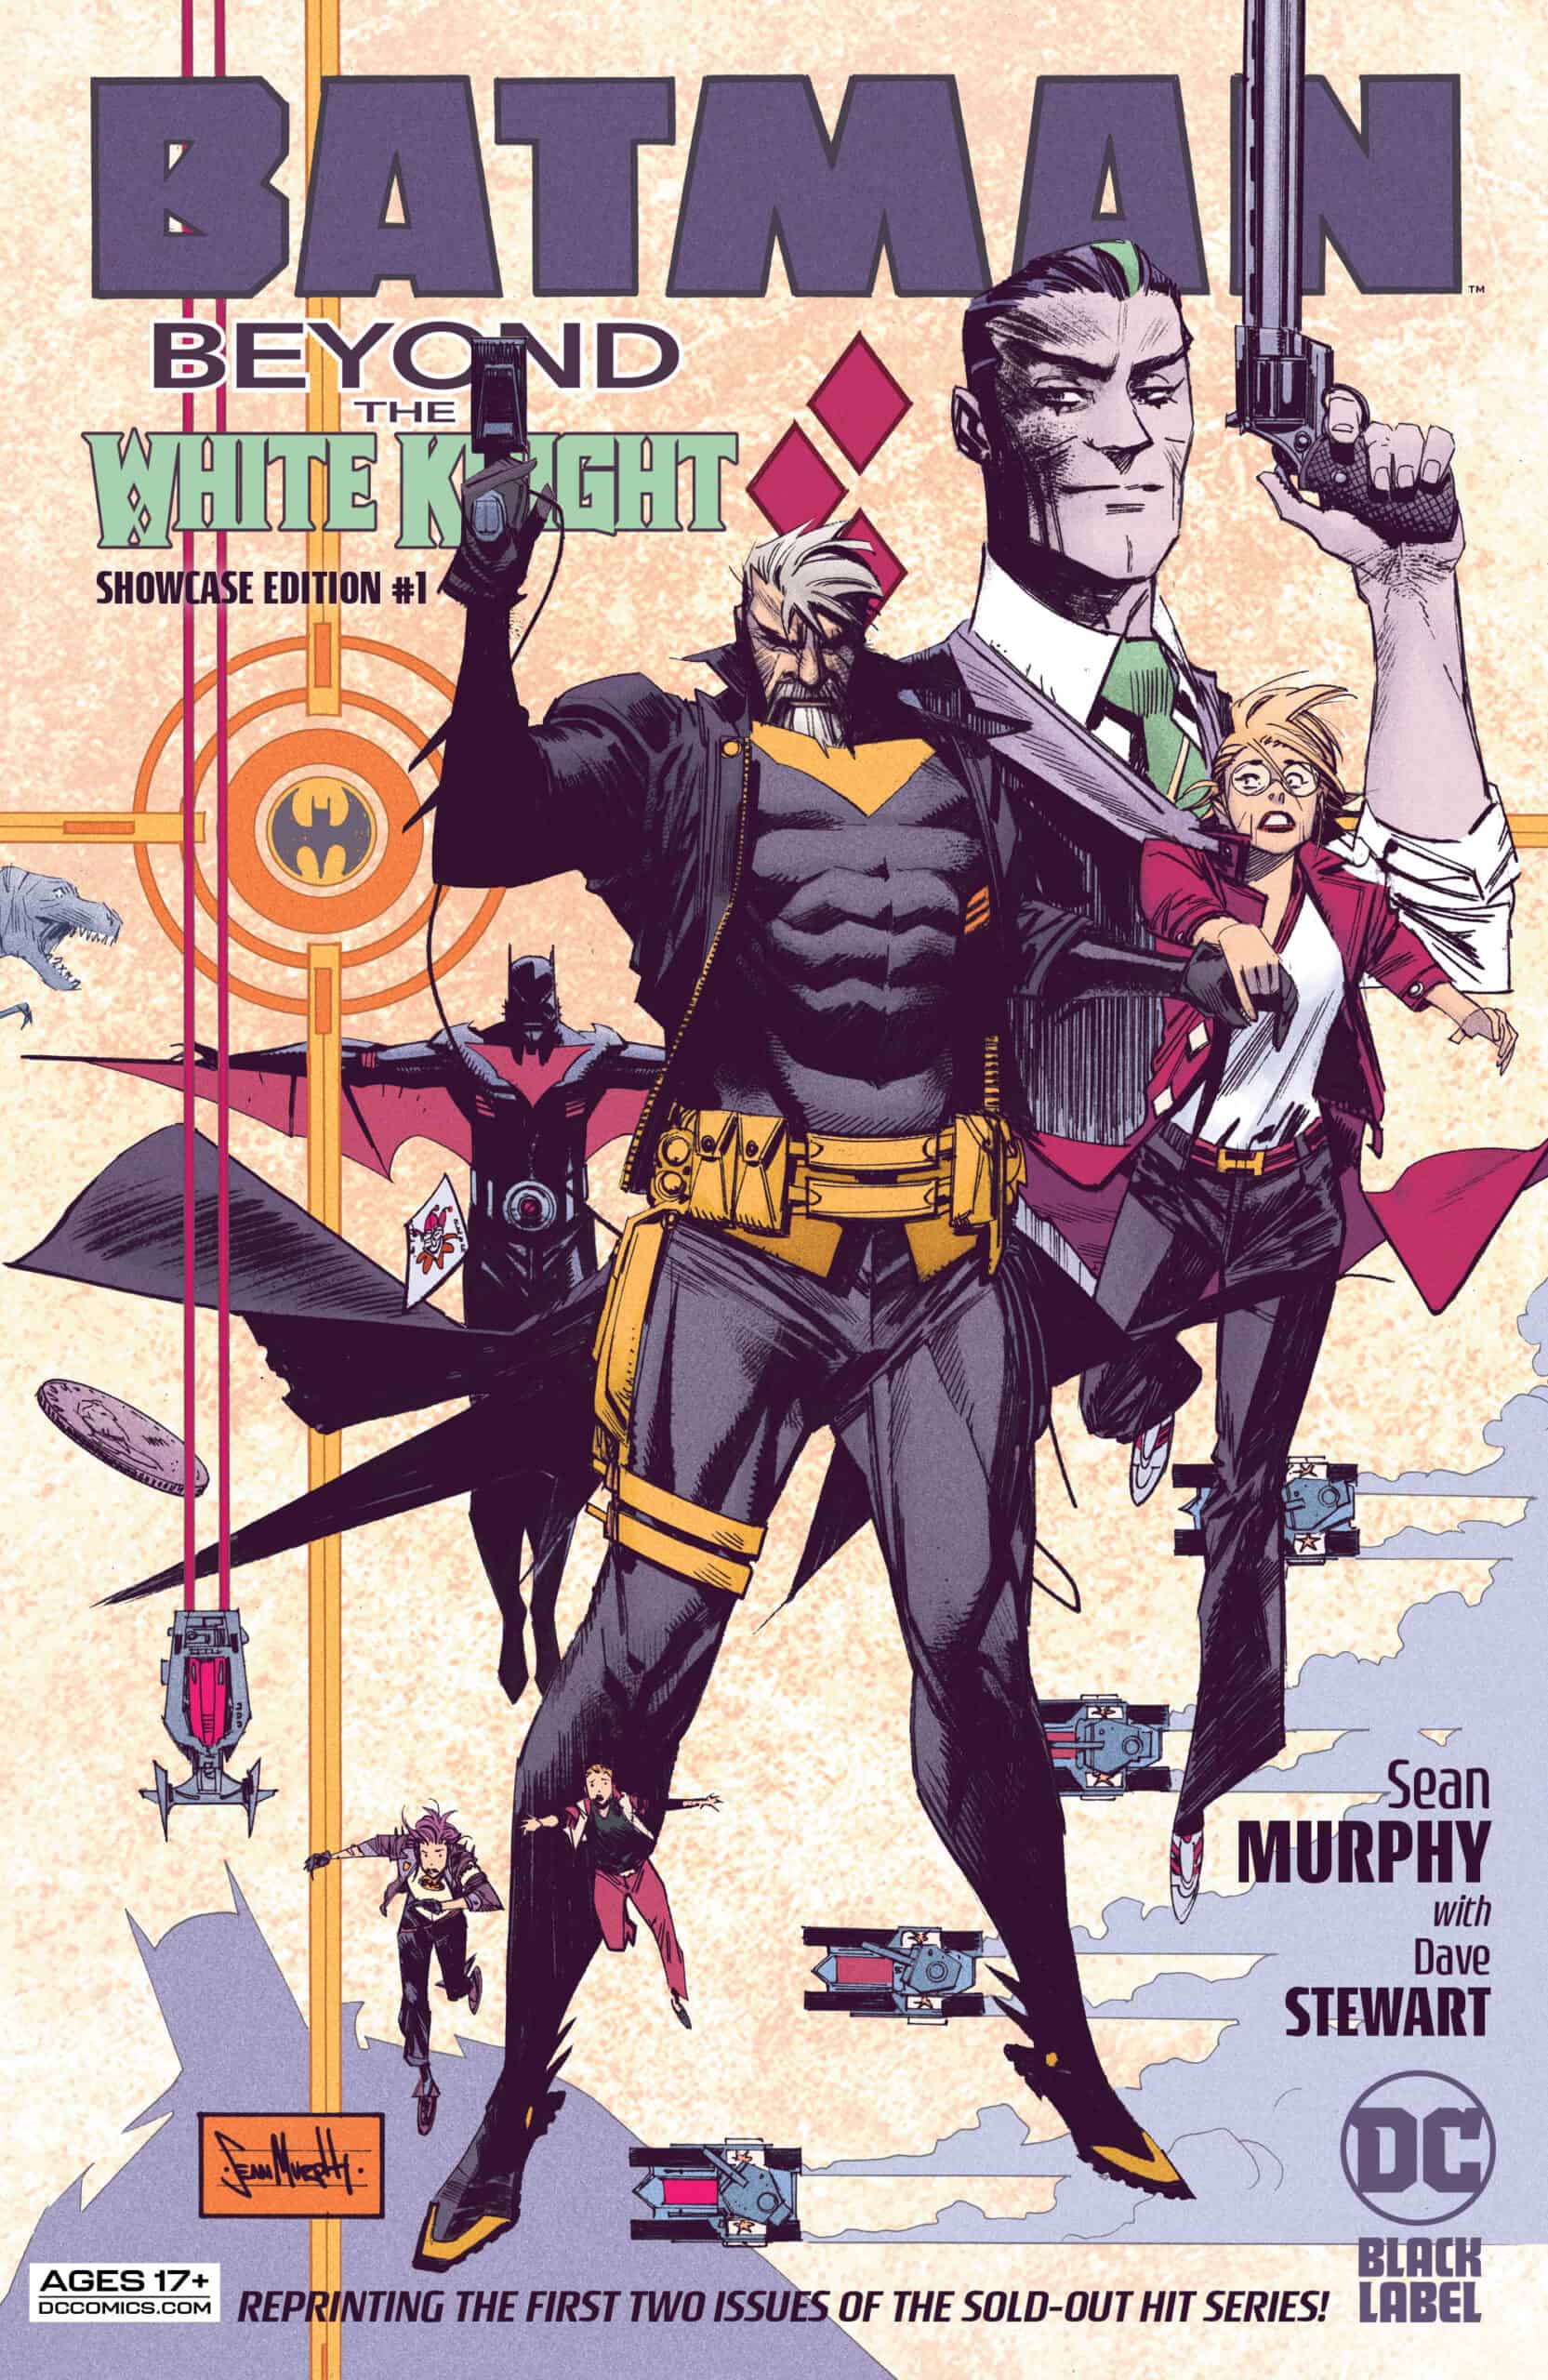 SNEAK PEEK: Preview DC Comics' BATMAN: BEYOND THE WHITE KNIGHT #3 SHOW CASE  EDITION - Comic Watch